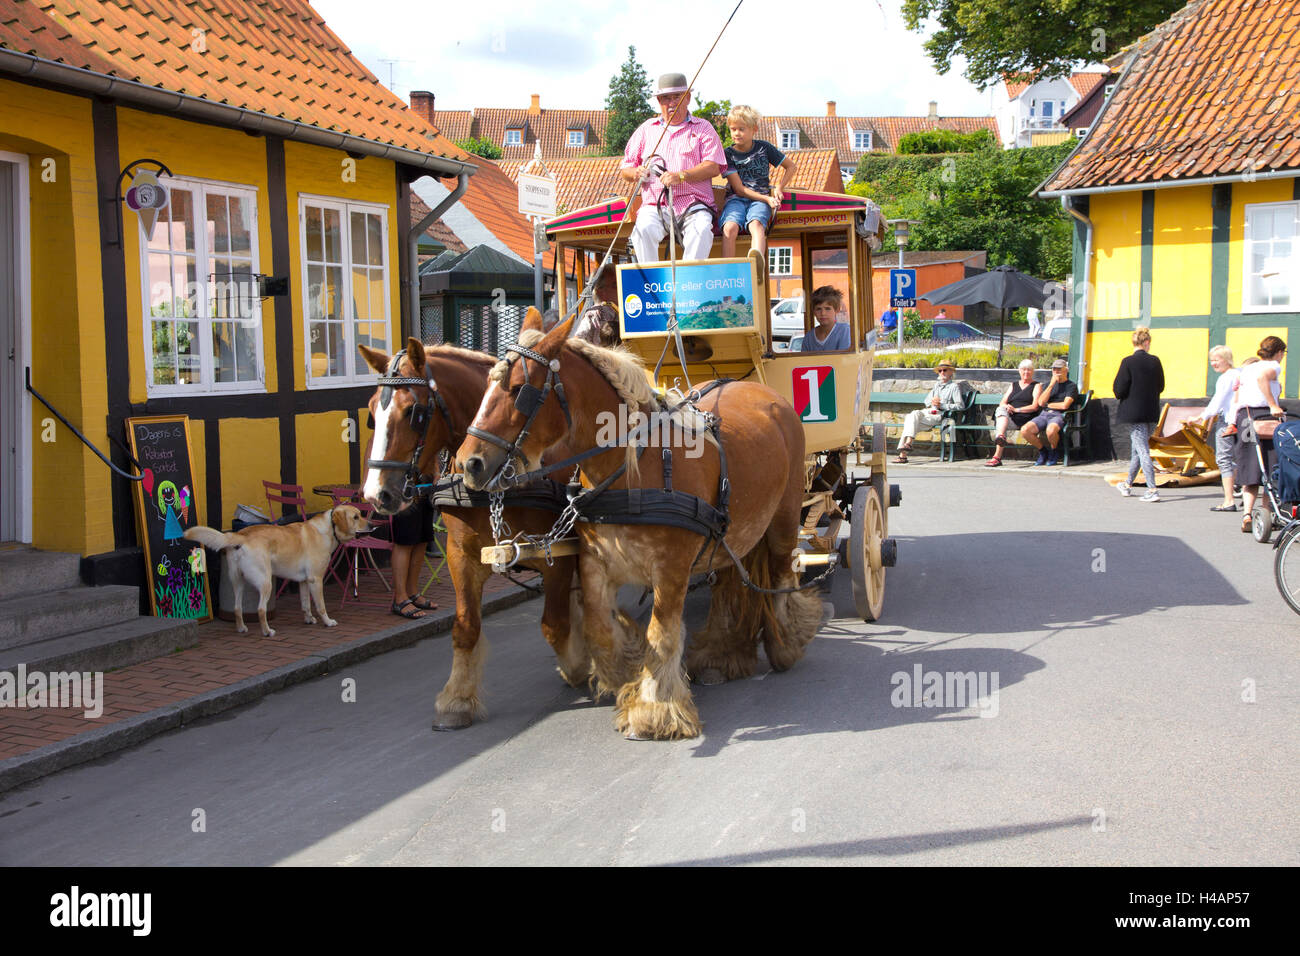 Un giro in carrozza nel villaggio di Svaneke sull'isola danese di Bornholm. Foto Stock